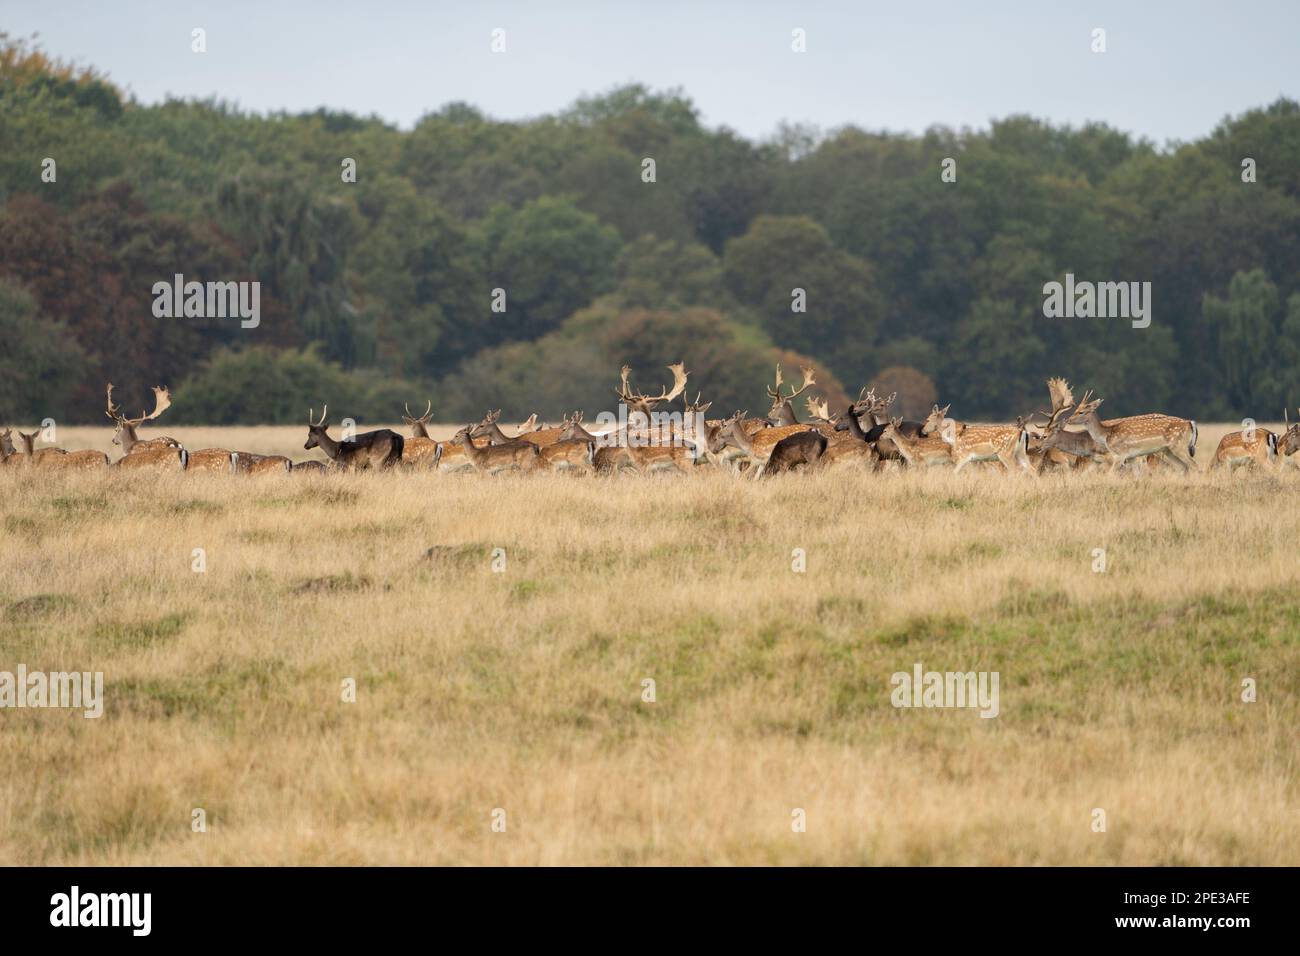 ciervos marrones y blancos con grandes cuernos caminando, corriendo, comiendo, con cachorros alrededor del bosque verde y los campos amarillos. El ciervo barbecho es un eleg Foto de stock